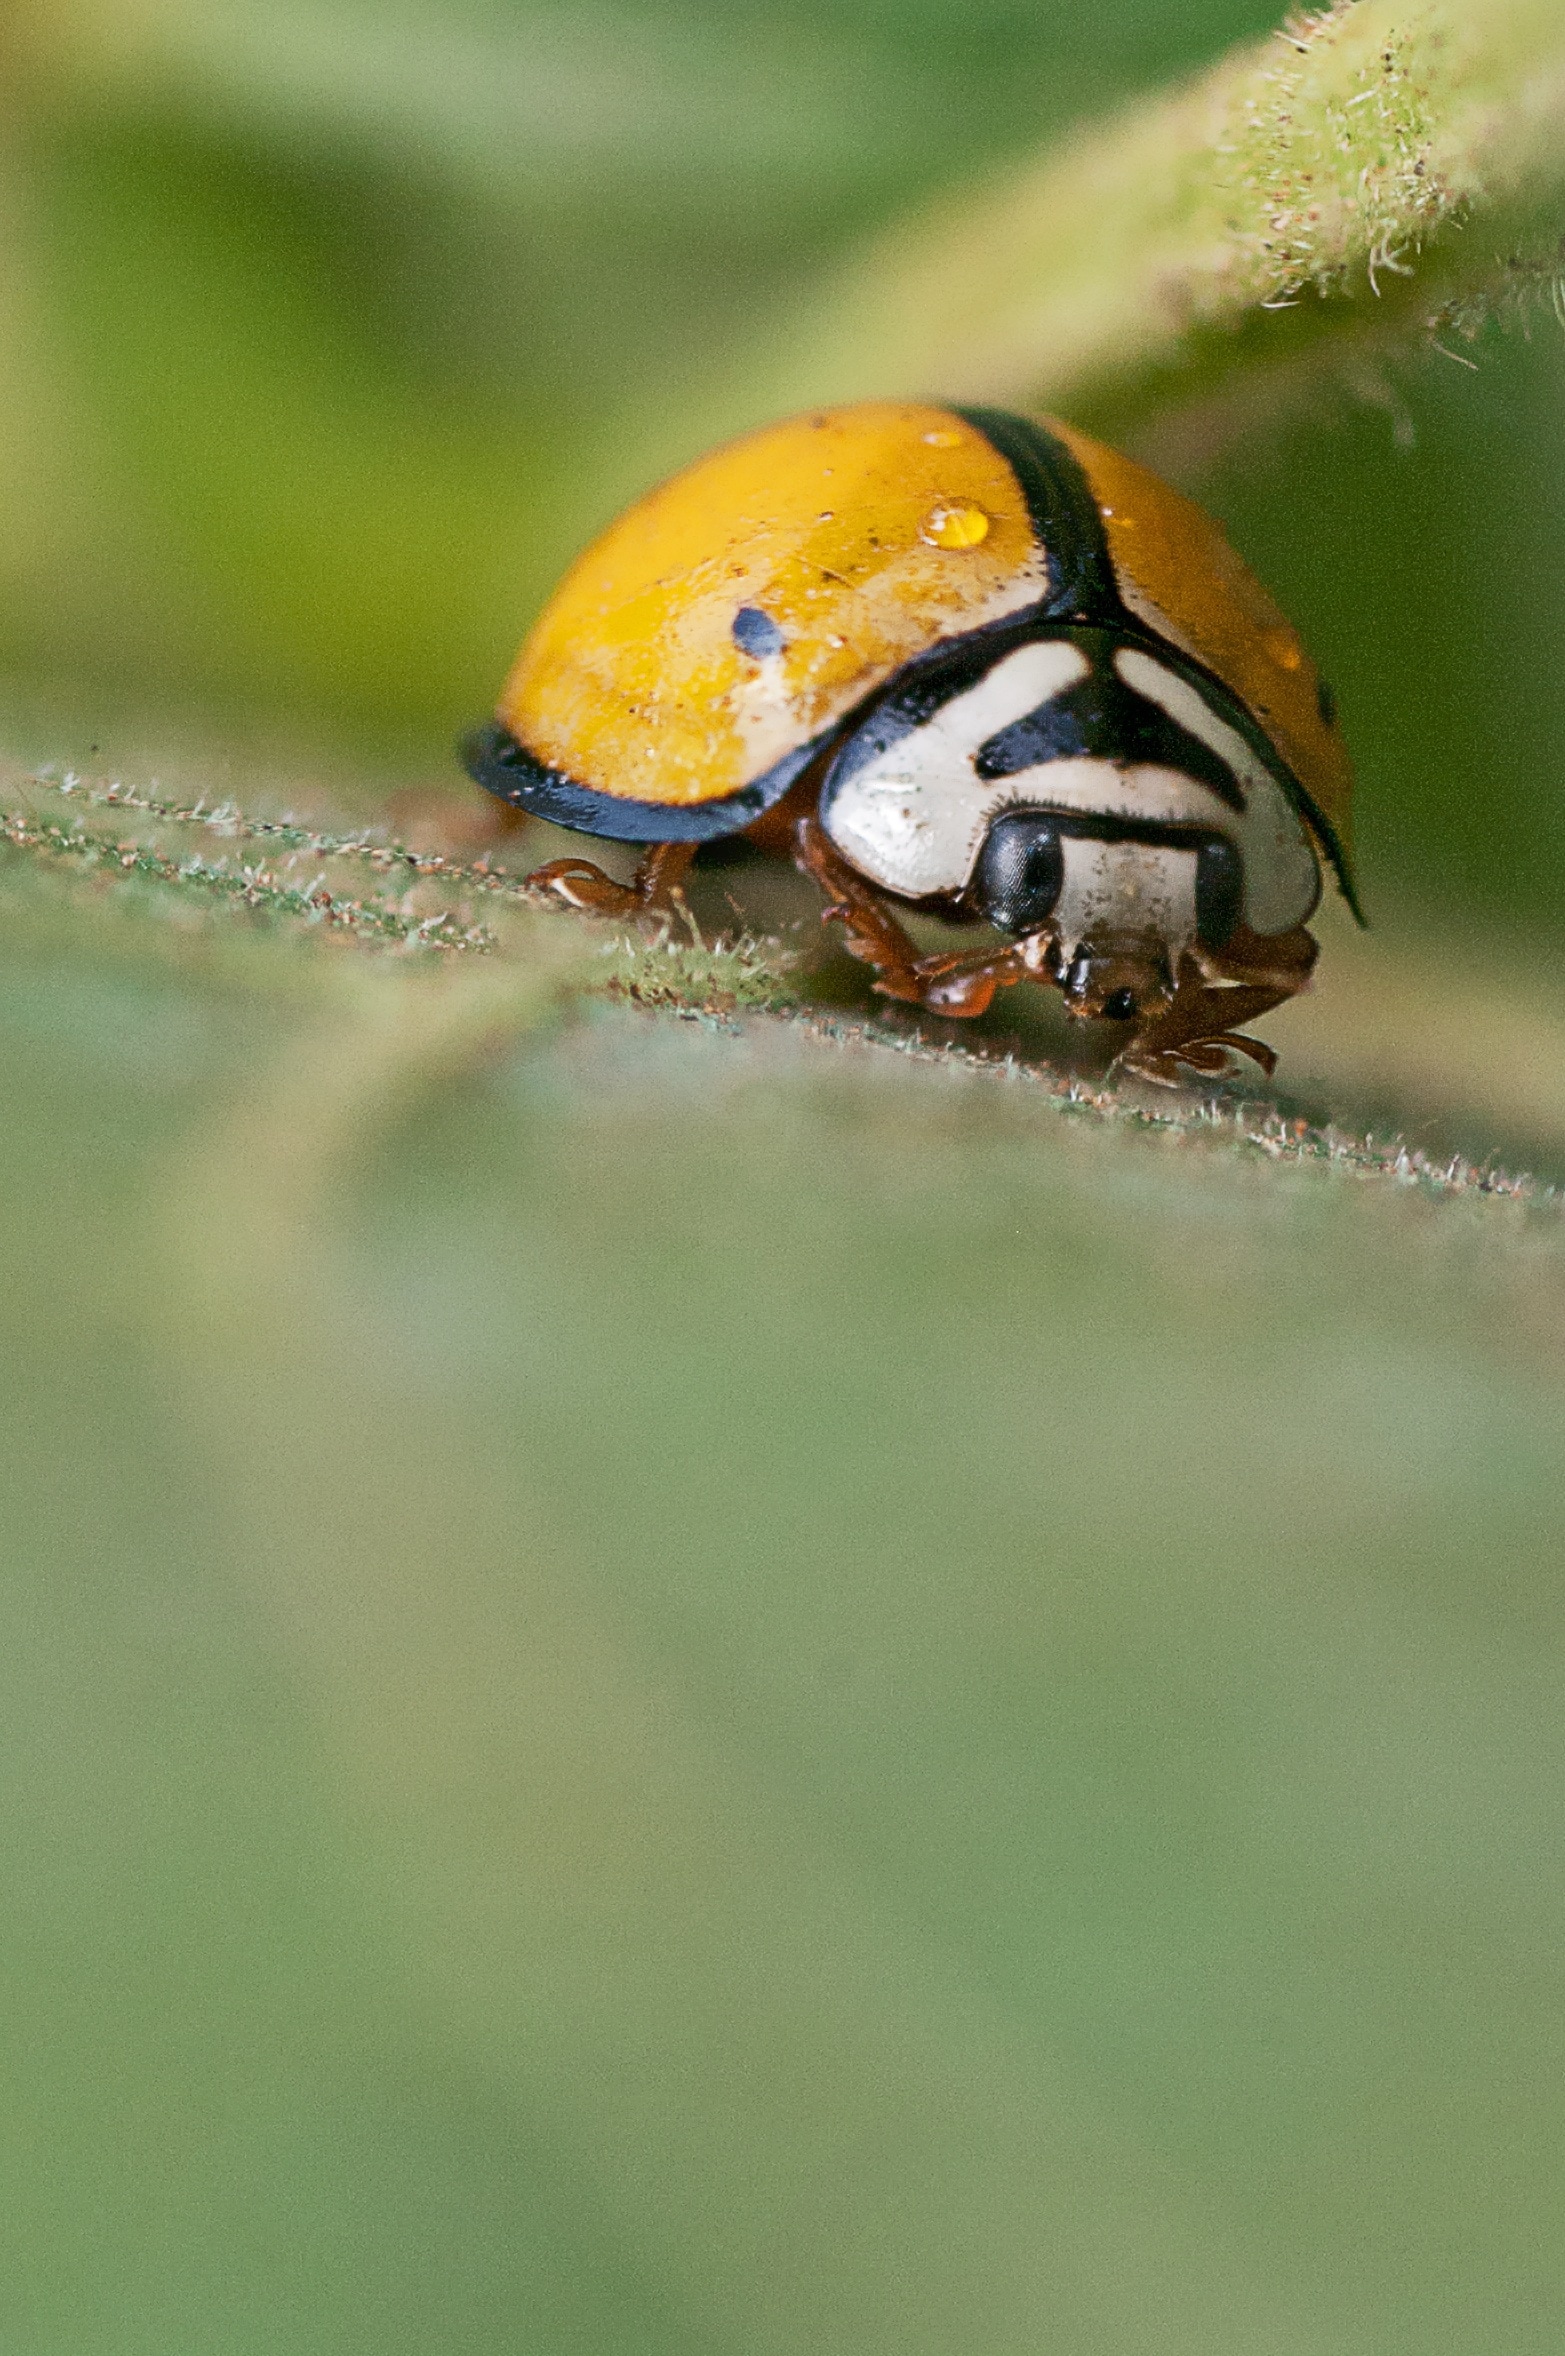 yellow and black ladybug